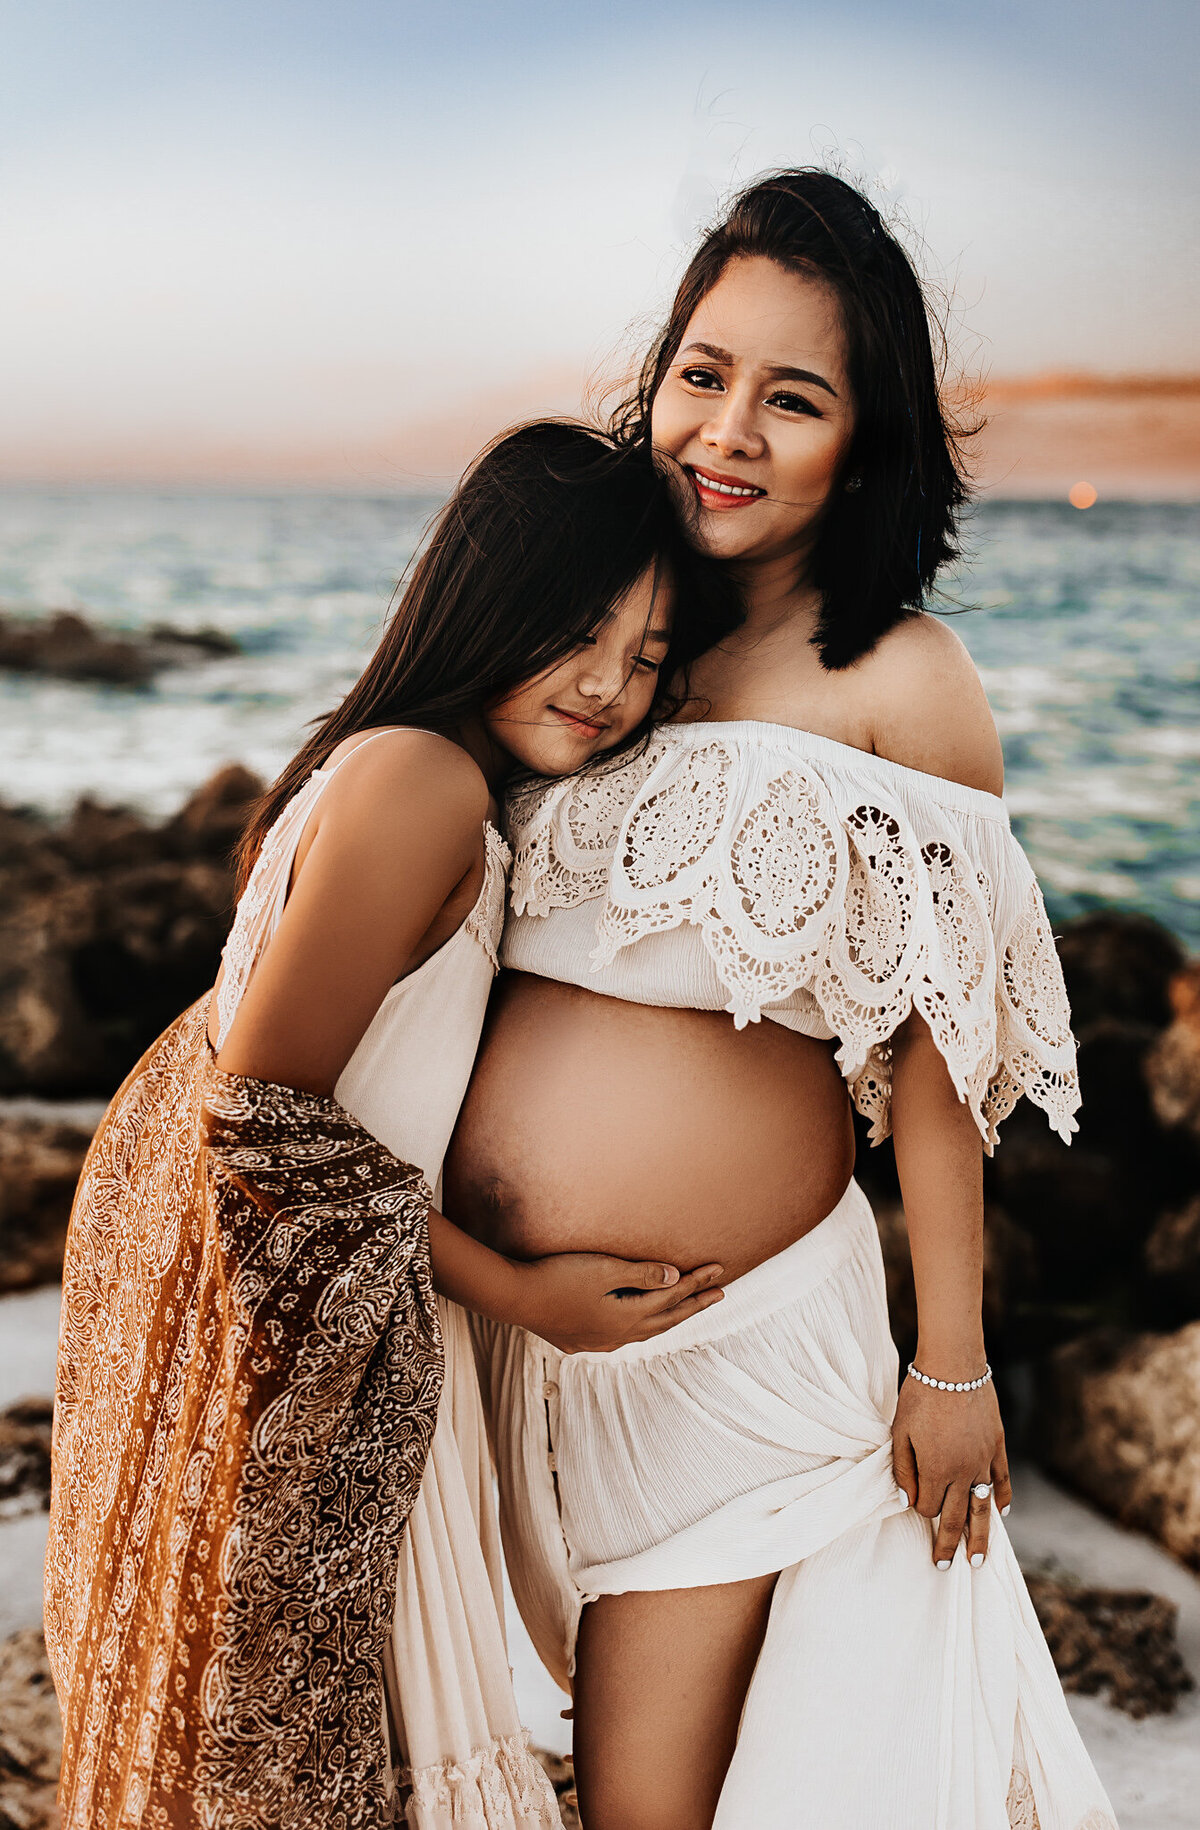 anna maria island maternity photoshoot